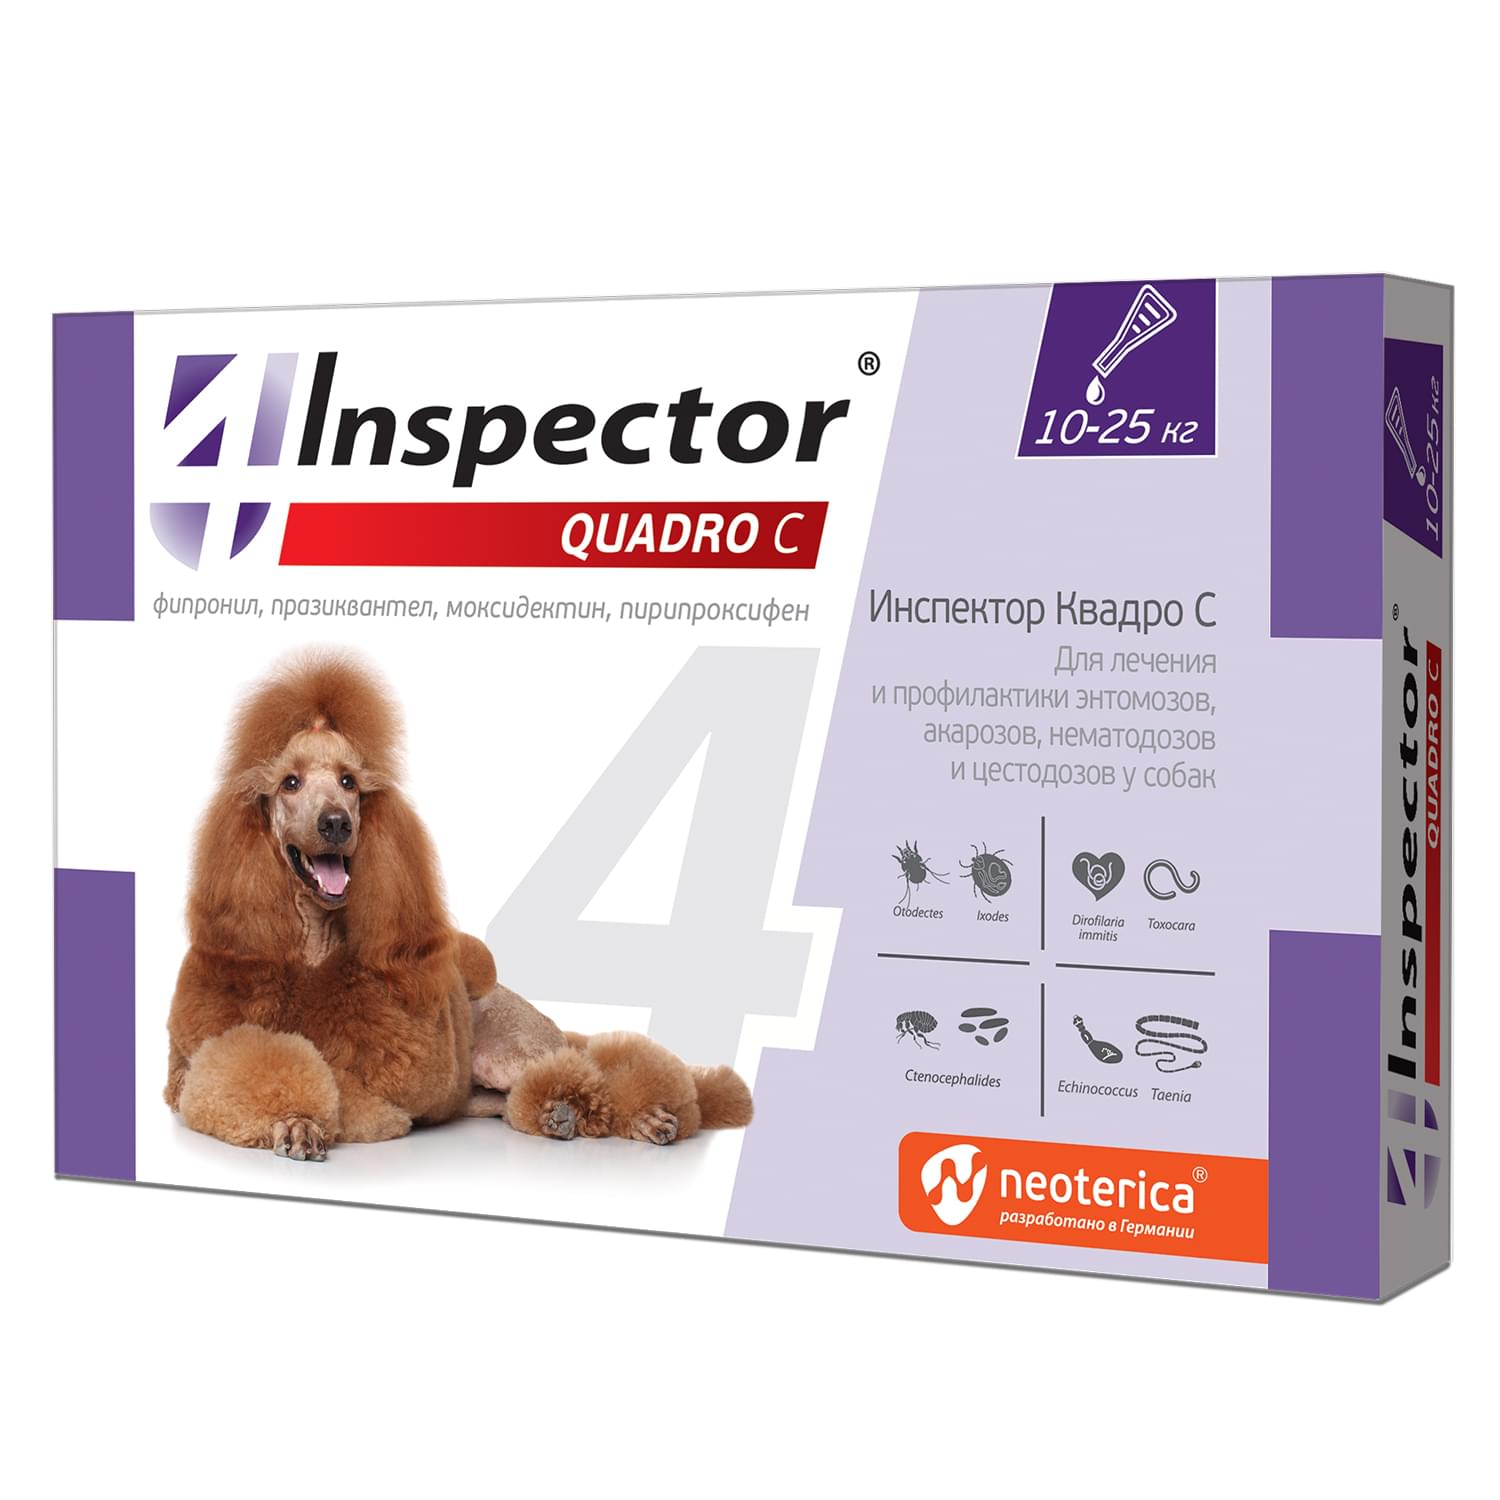 Капли для собак Inspector 10-25 кг ✓ товары для животных Neoterica GmbH  (Неотерика)